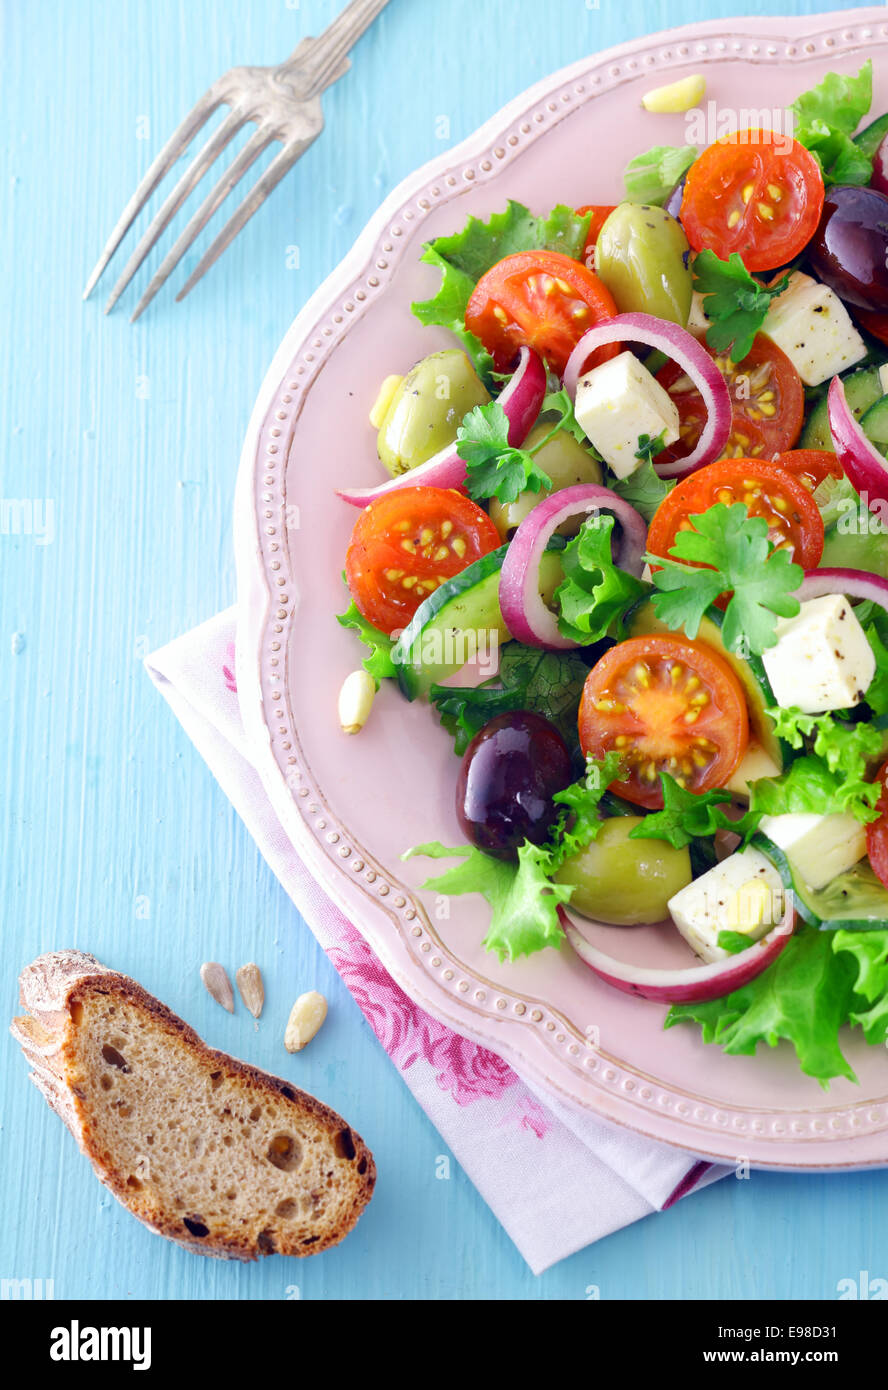 Draufsicht auf eine Portion Feta-Käse-Salat mit Oliven und Kirschtomaten auf einem erhabenen weißen Teller mit einer Scheibe Roggenbrot Stockfoto